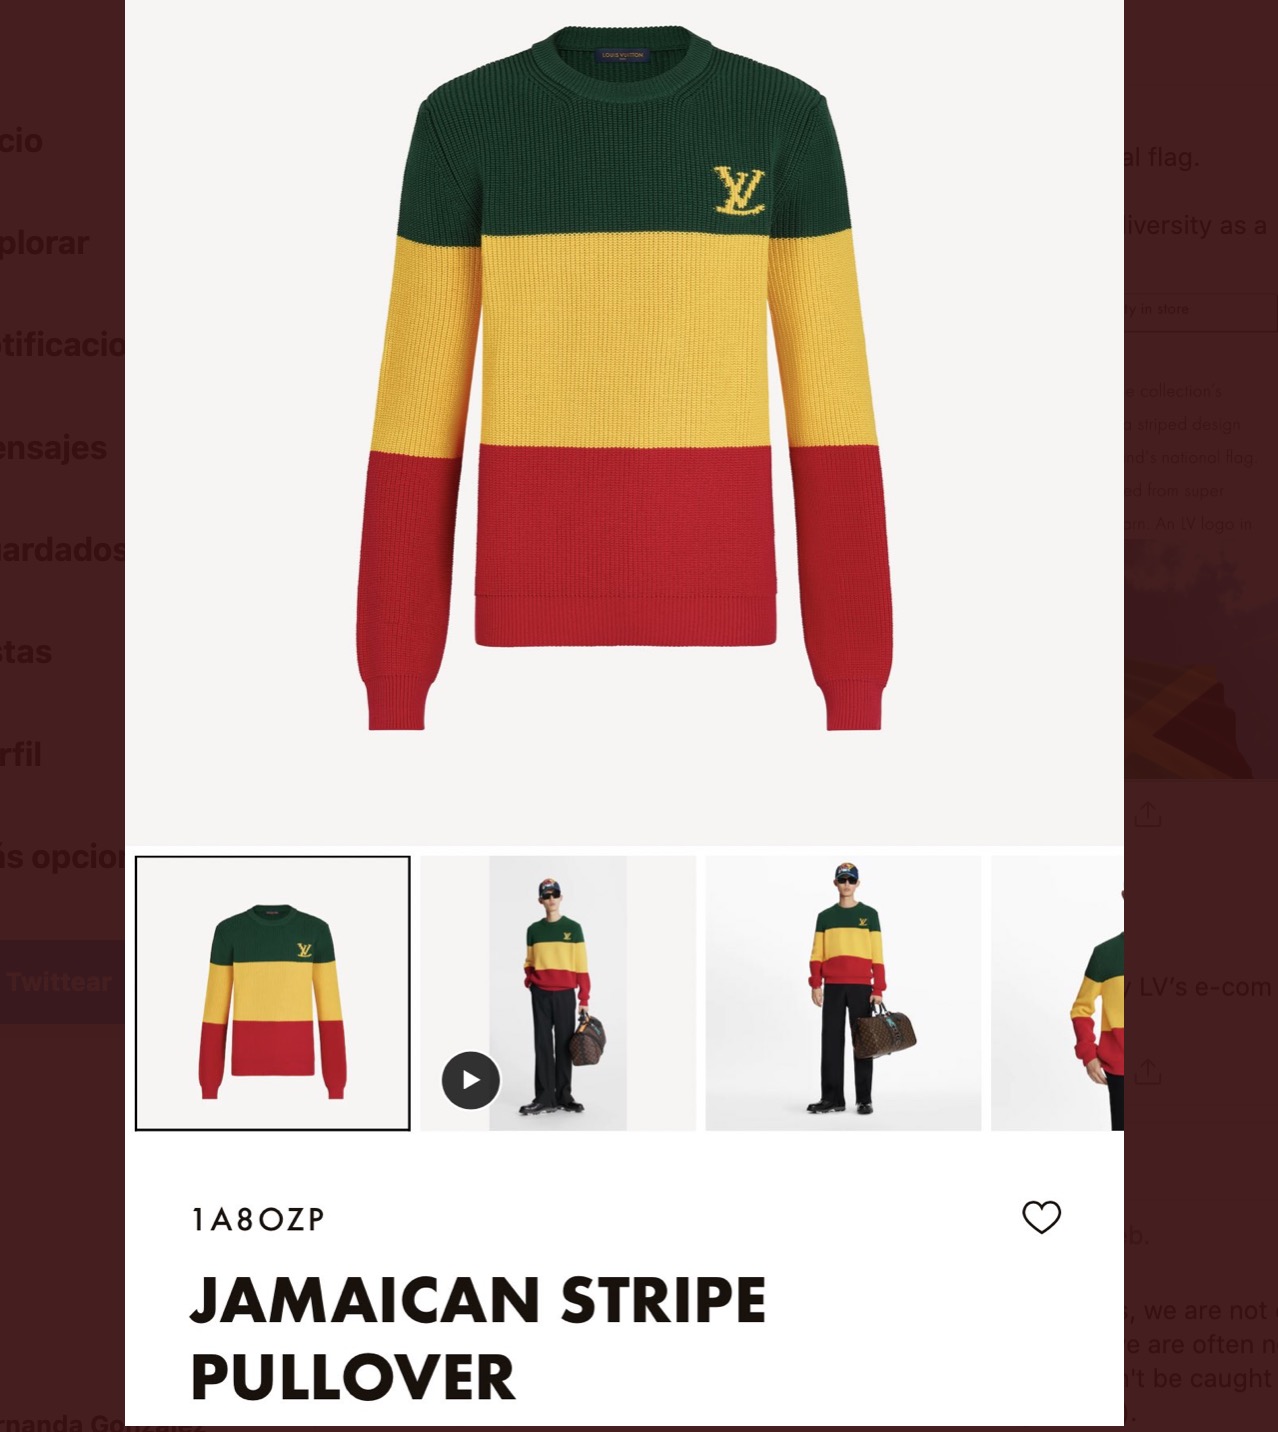 Apropiación cultural: Louis Vuitton lanza una sudadera de 995£ para rendir  tributo a la bandera de Jamaica y se equivoca en los colores